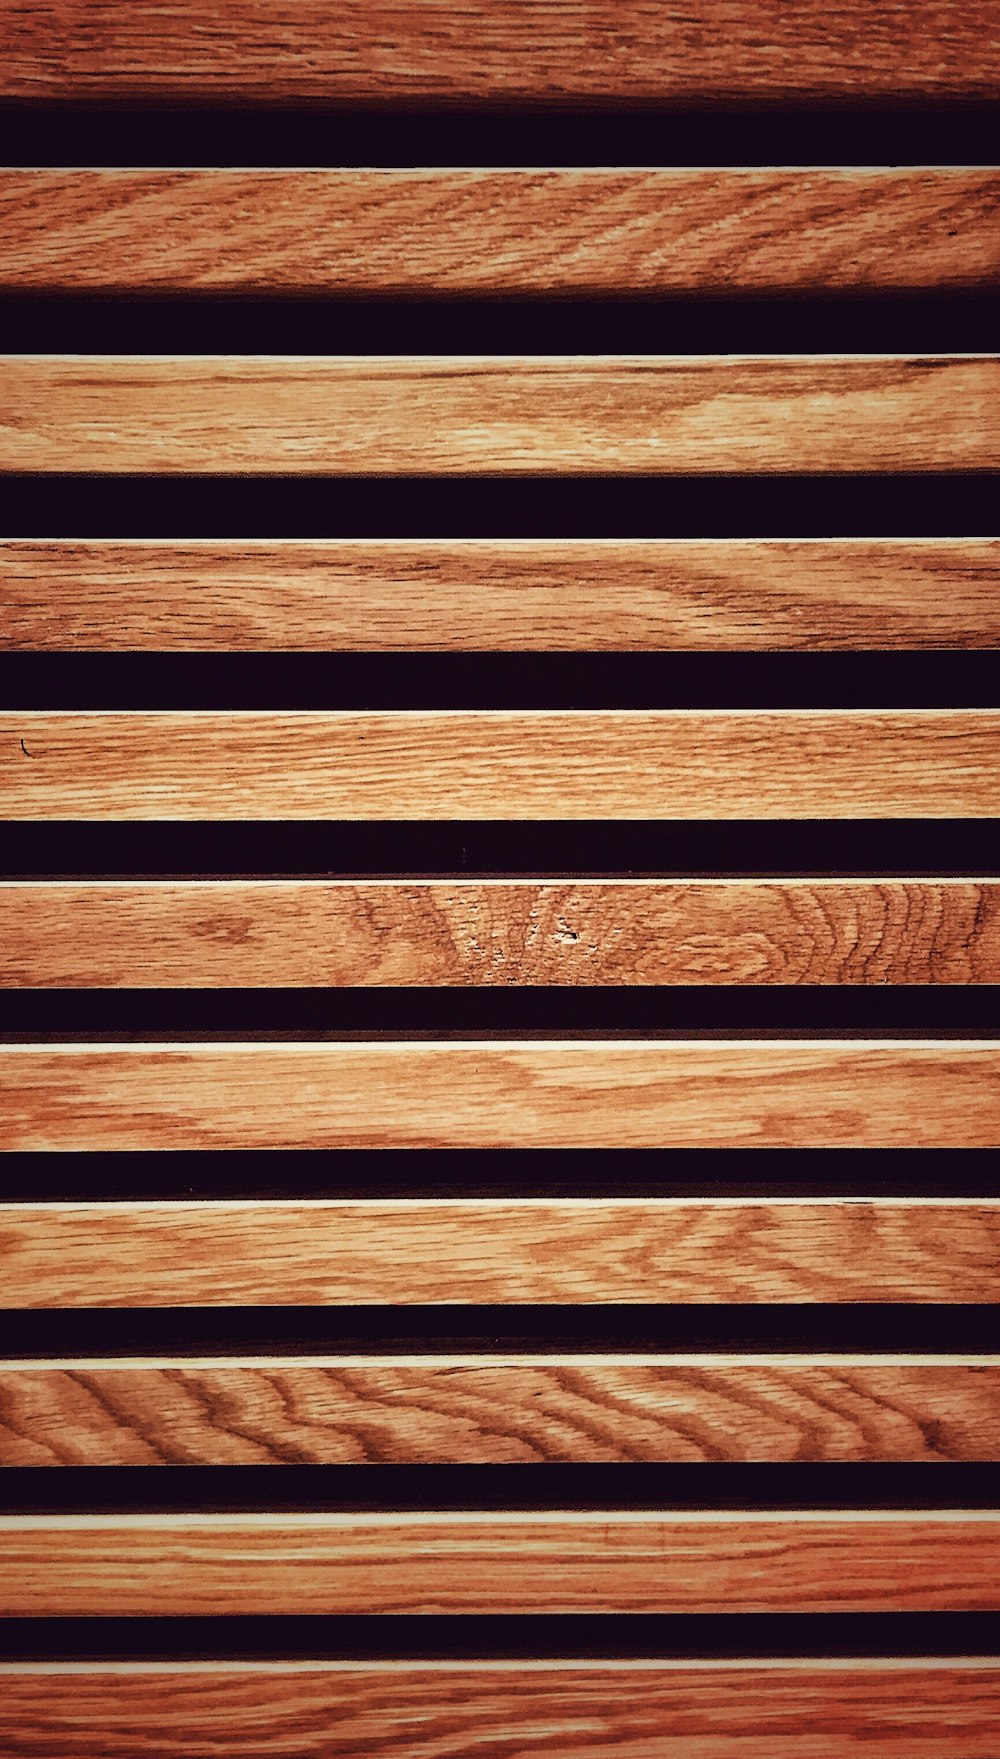 um close up de uma superfície ripada de madeira